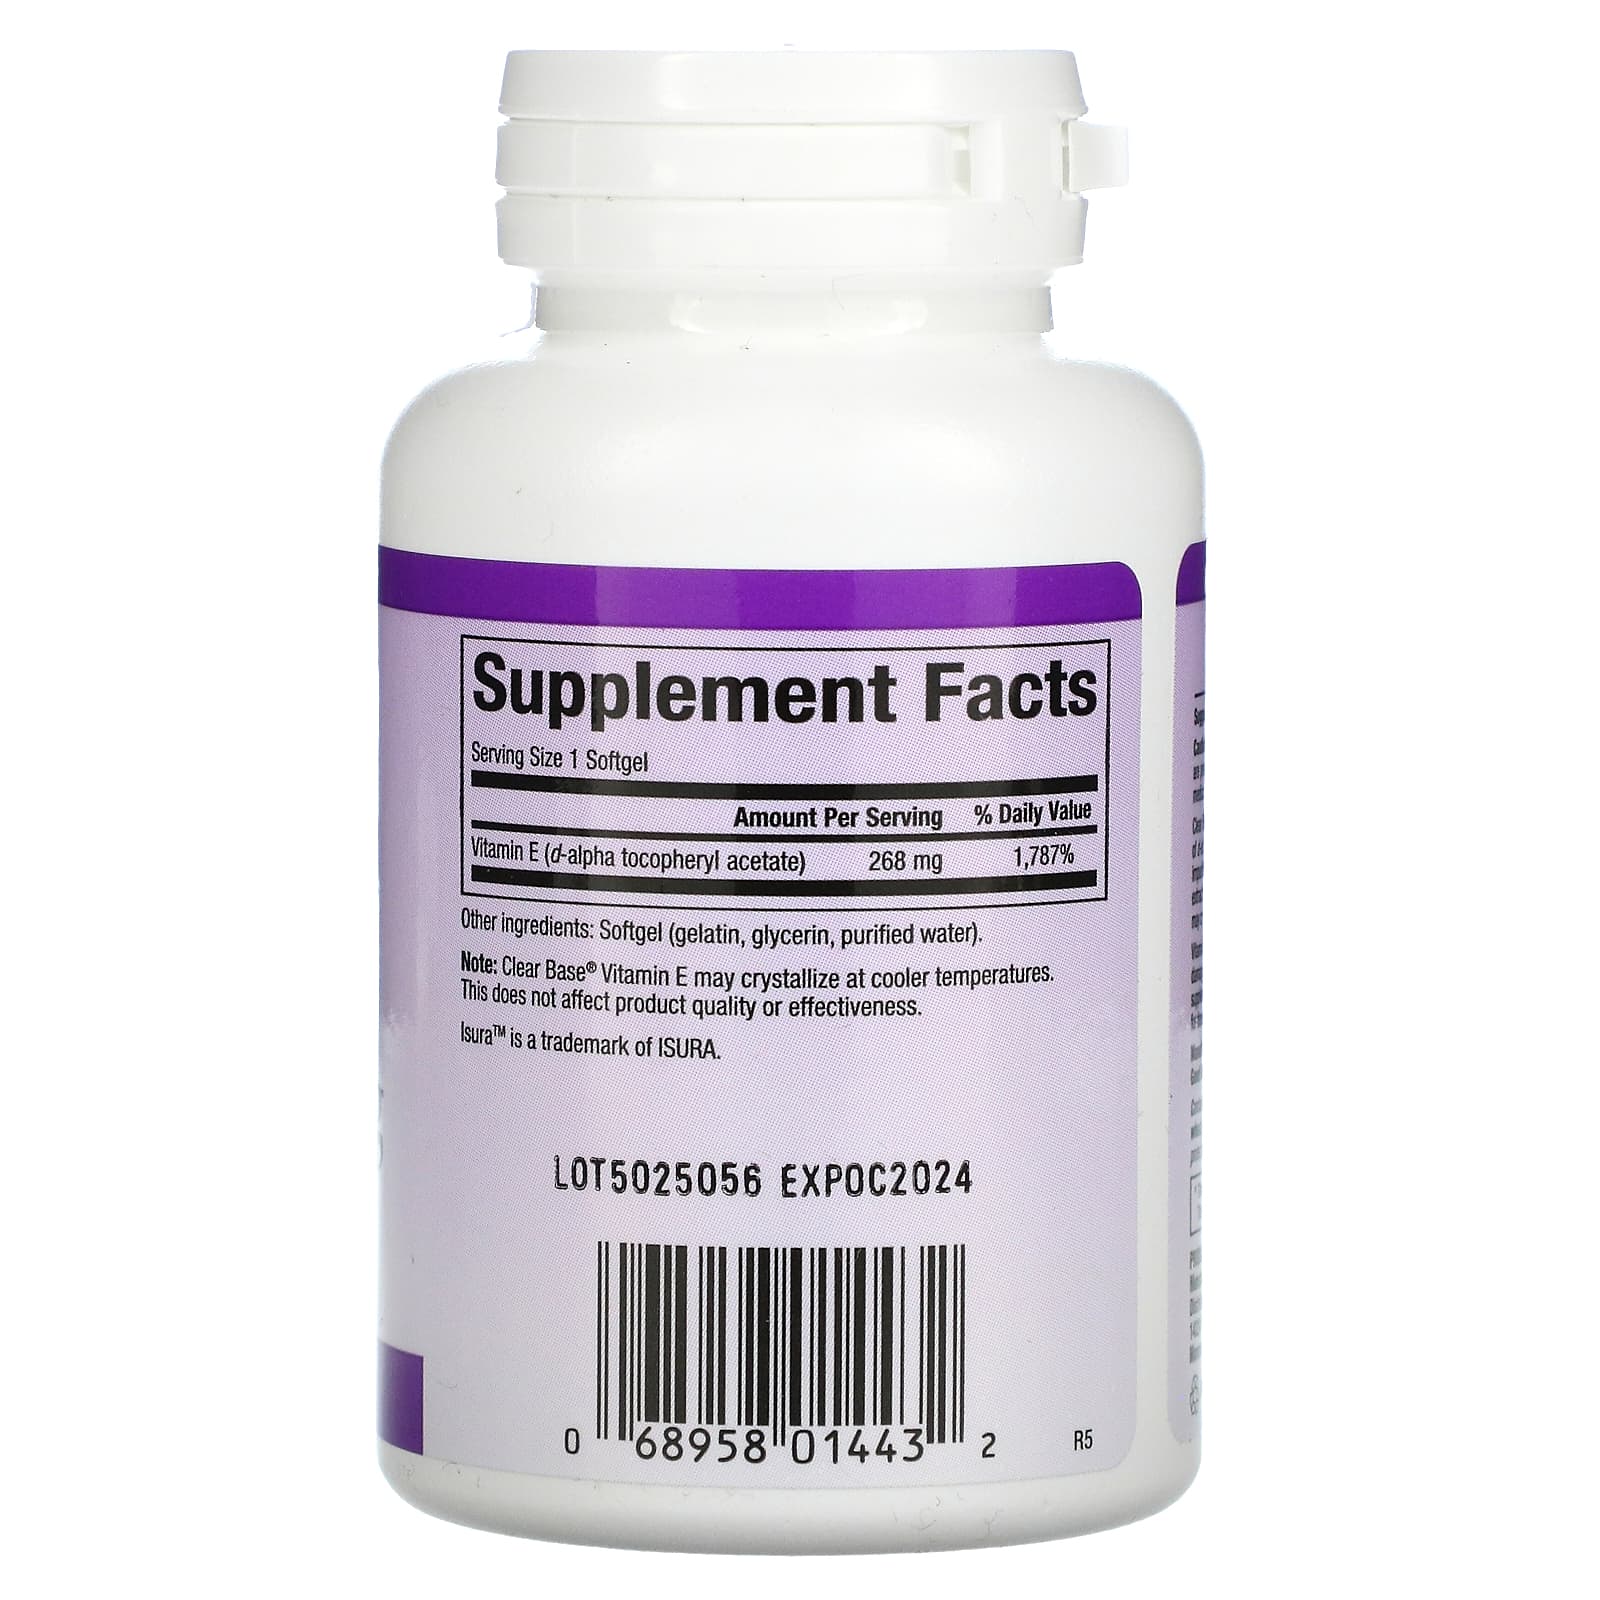 Clear Base Vitamin E 268 mg (400 IU)